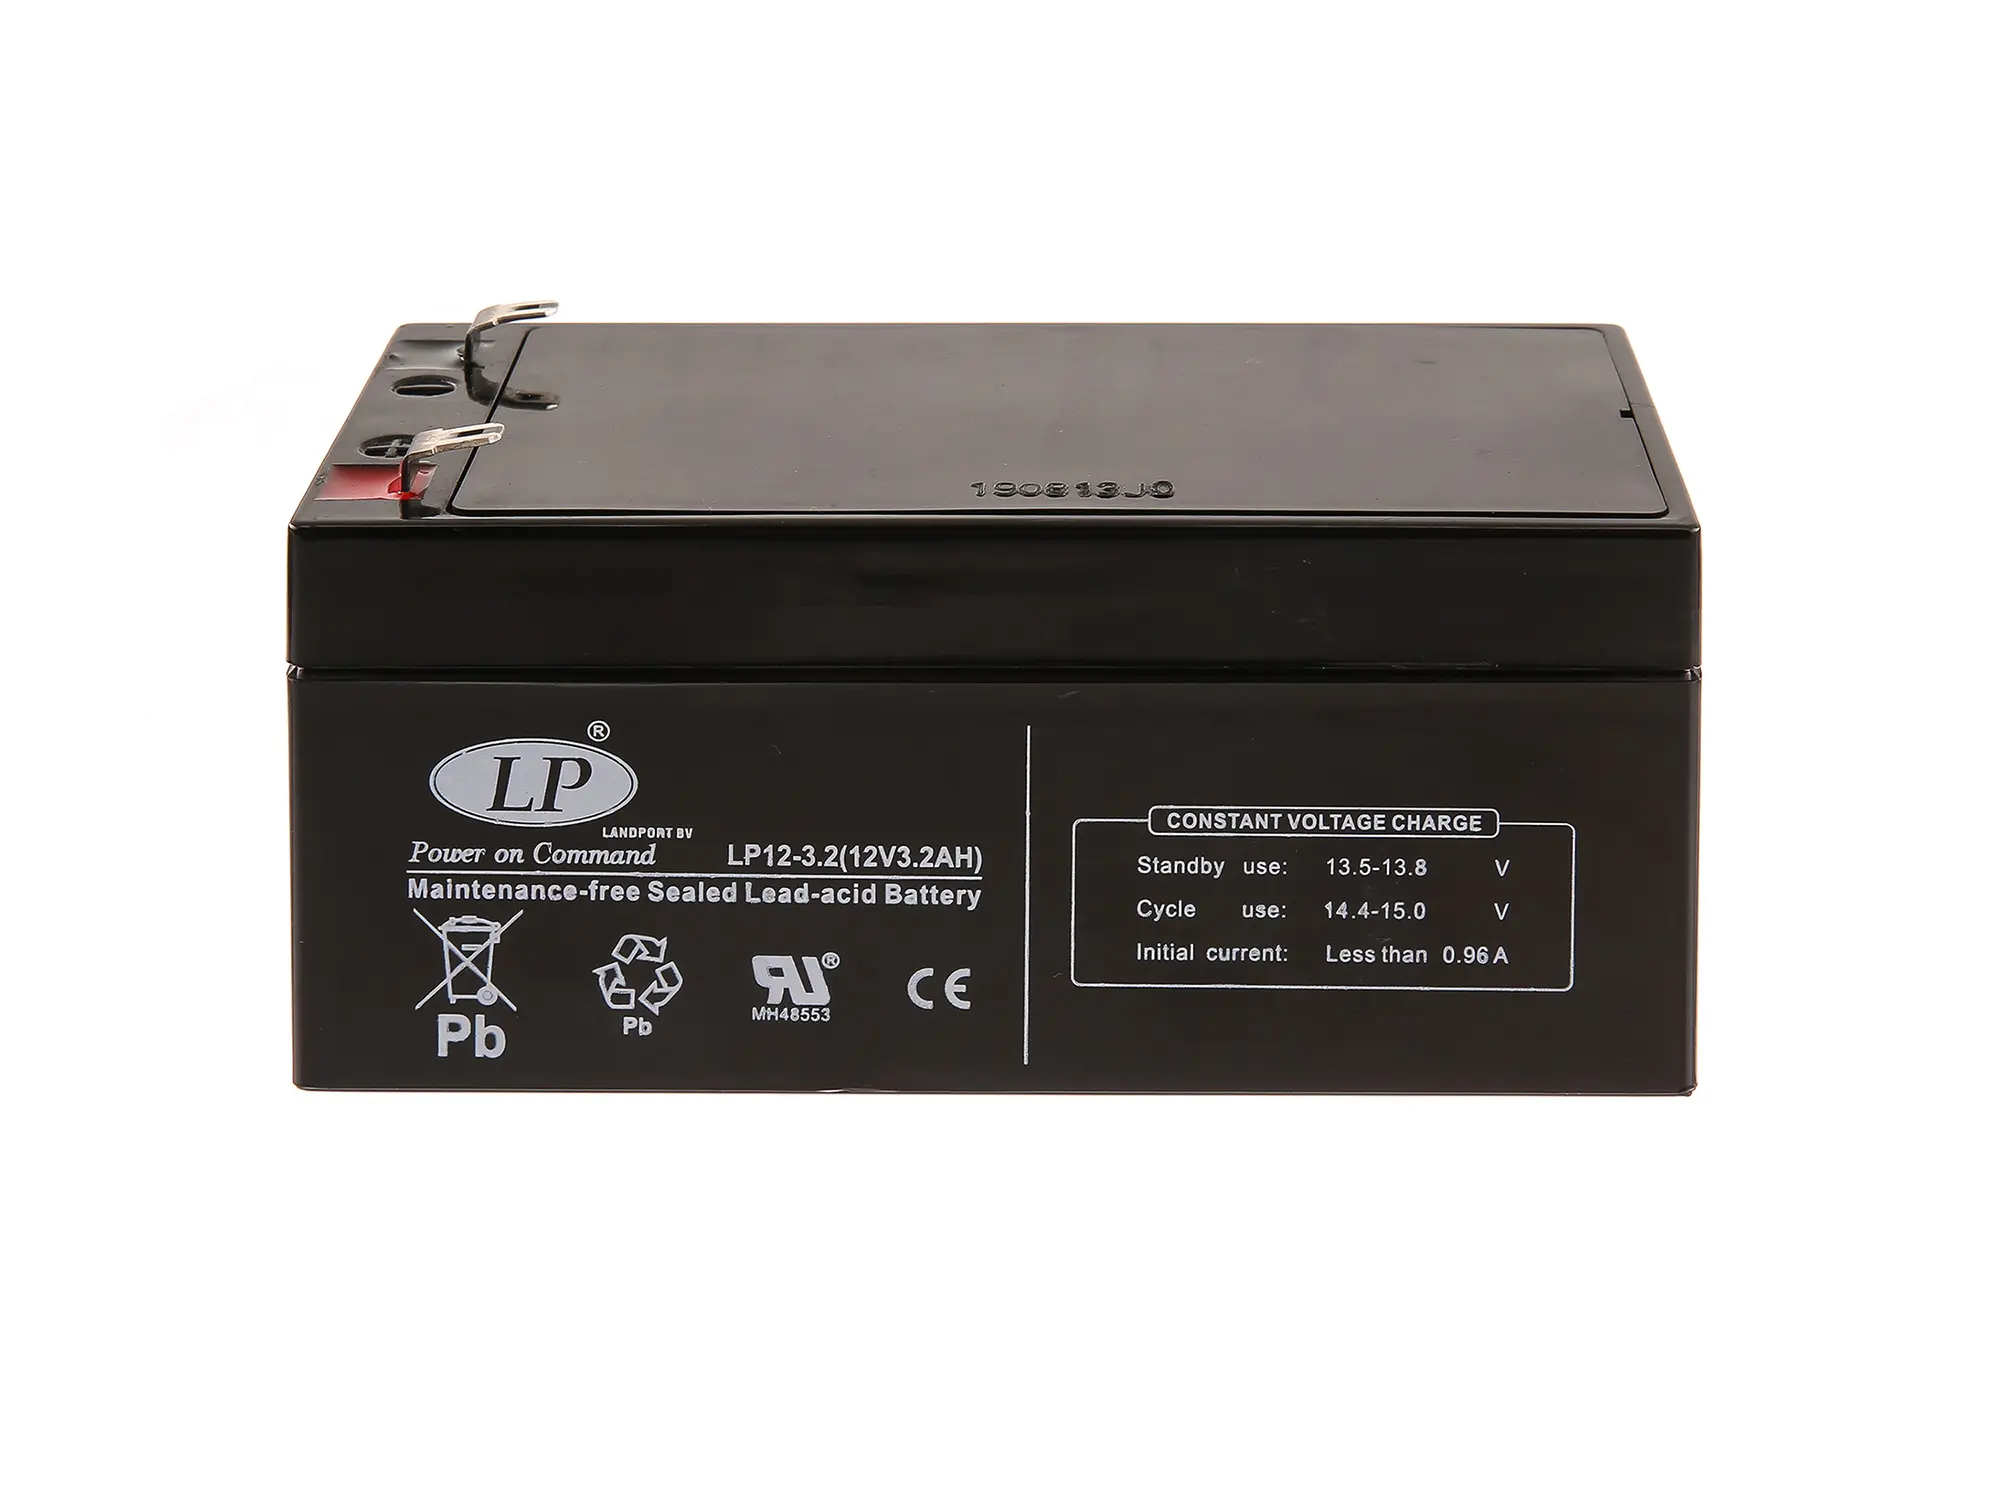 Batterie 12V 3,2Ah LANDPORT (Vlies - wartungsfrei) für Umbausatz - für Simson AWO 425, MZ RT, Art.-Nr.: GP10068545 - Bild 1